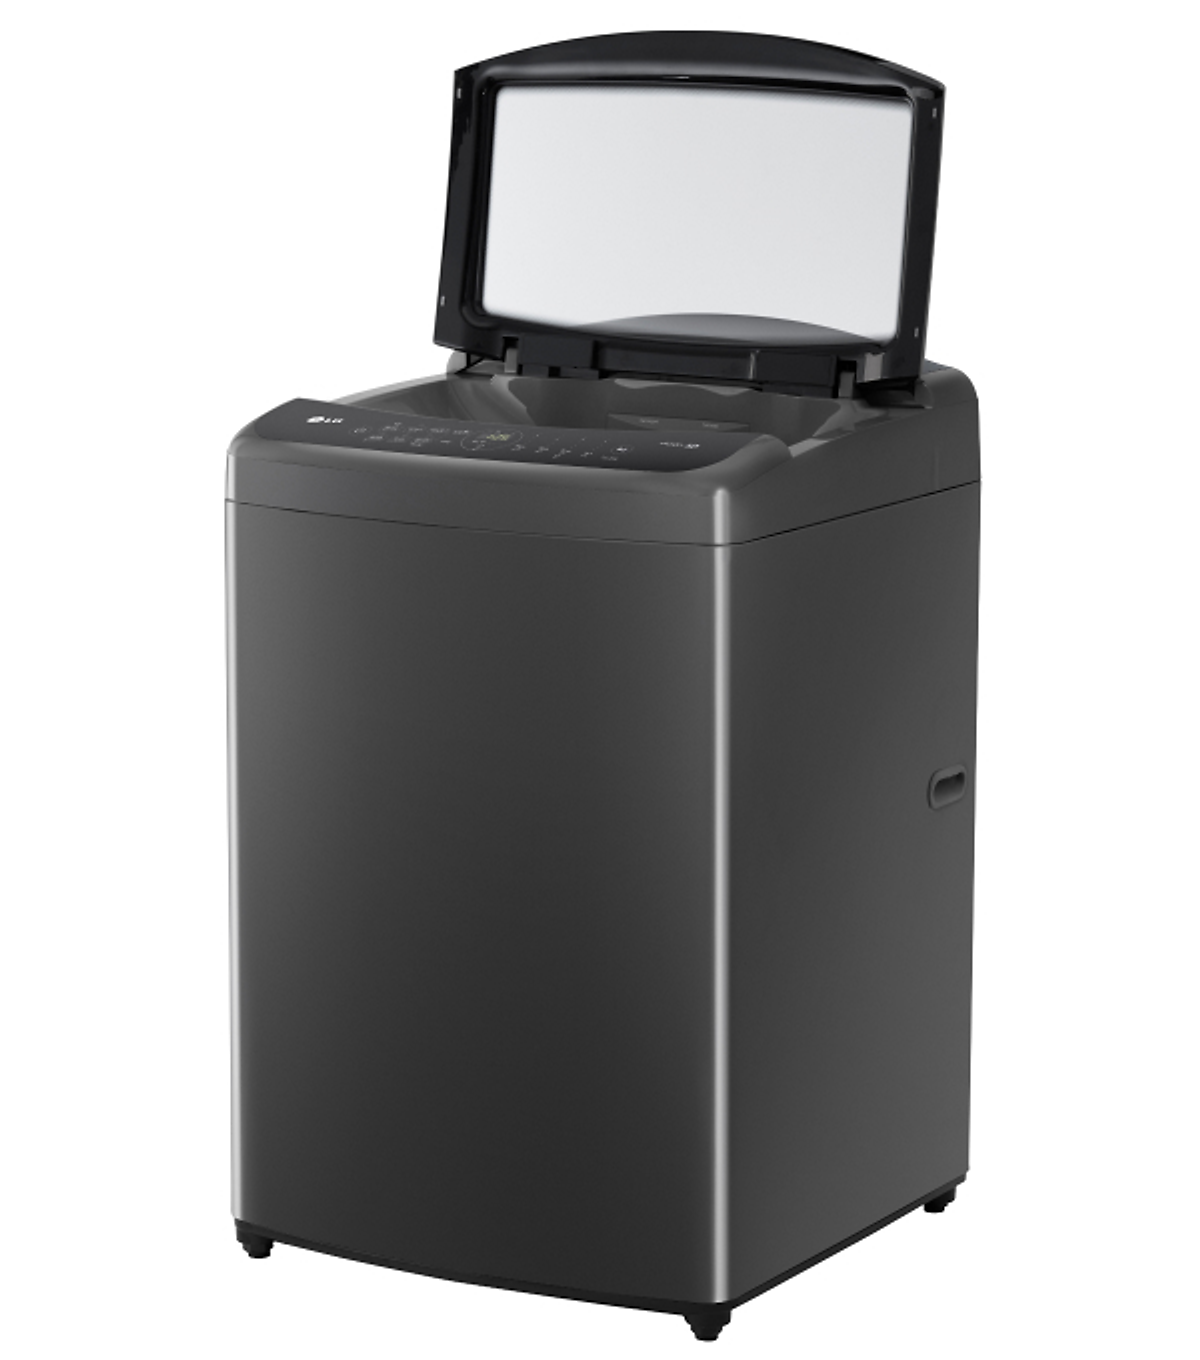 Máy giặt LG TV2518DV3B inverter 18kg - Hàng chính hãng (chỉ giao HCM)